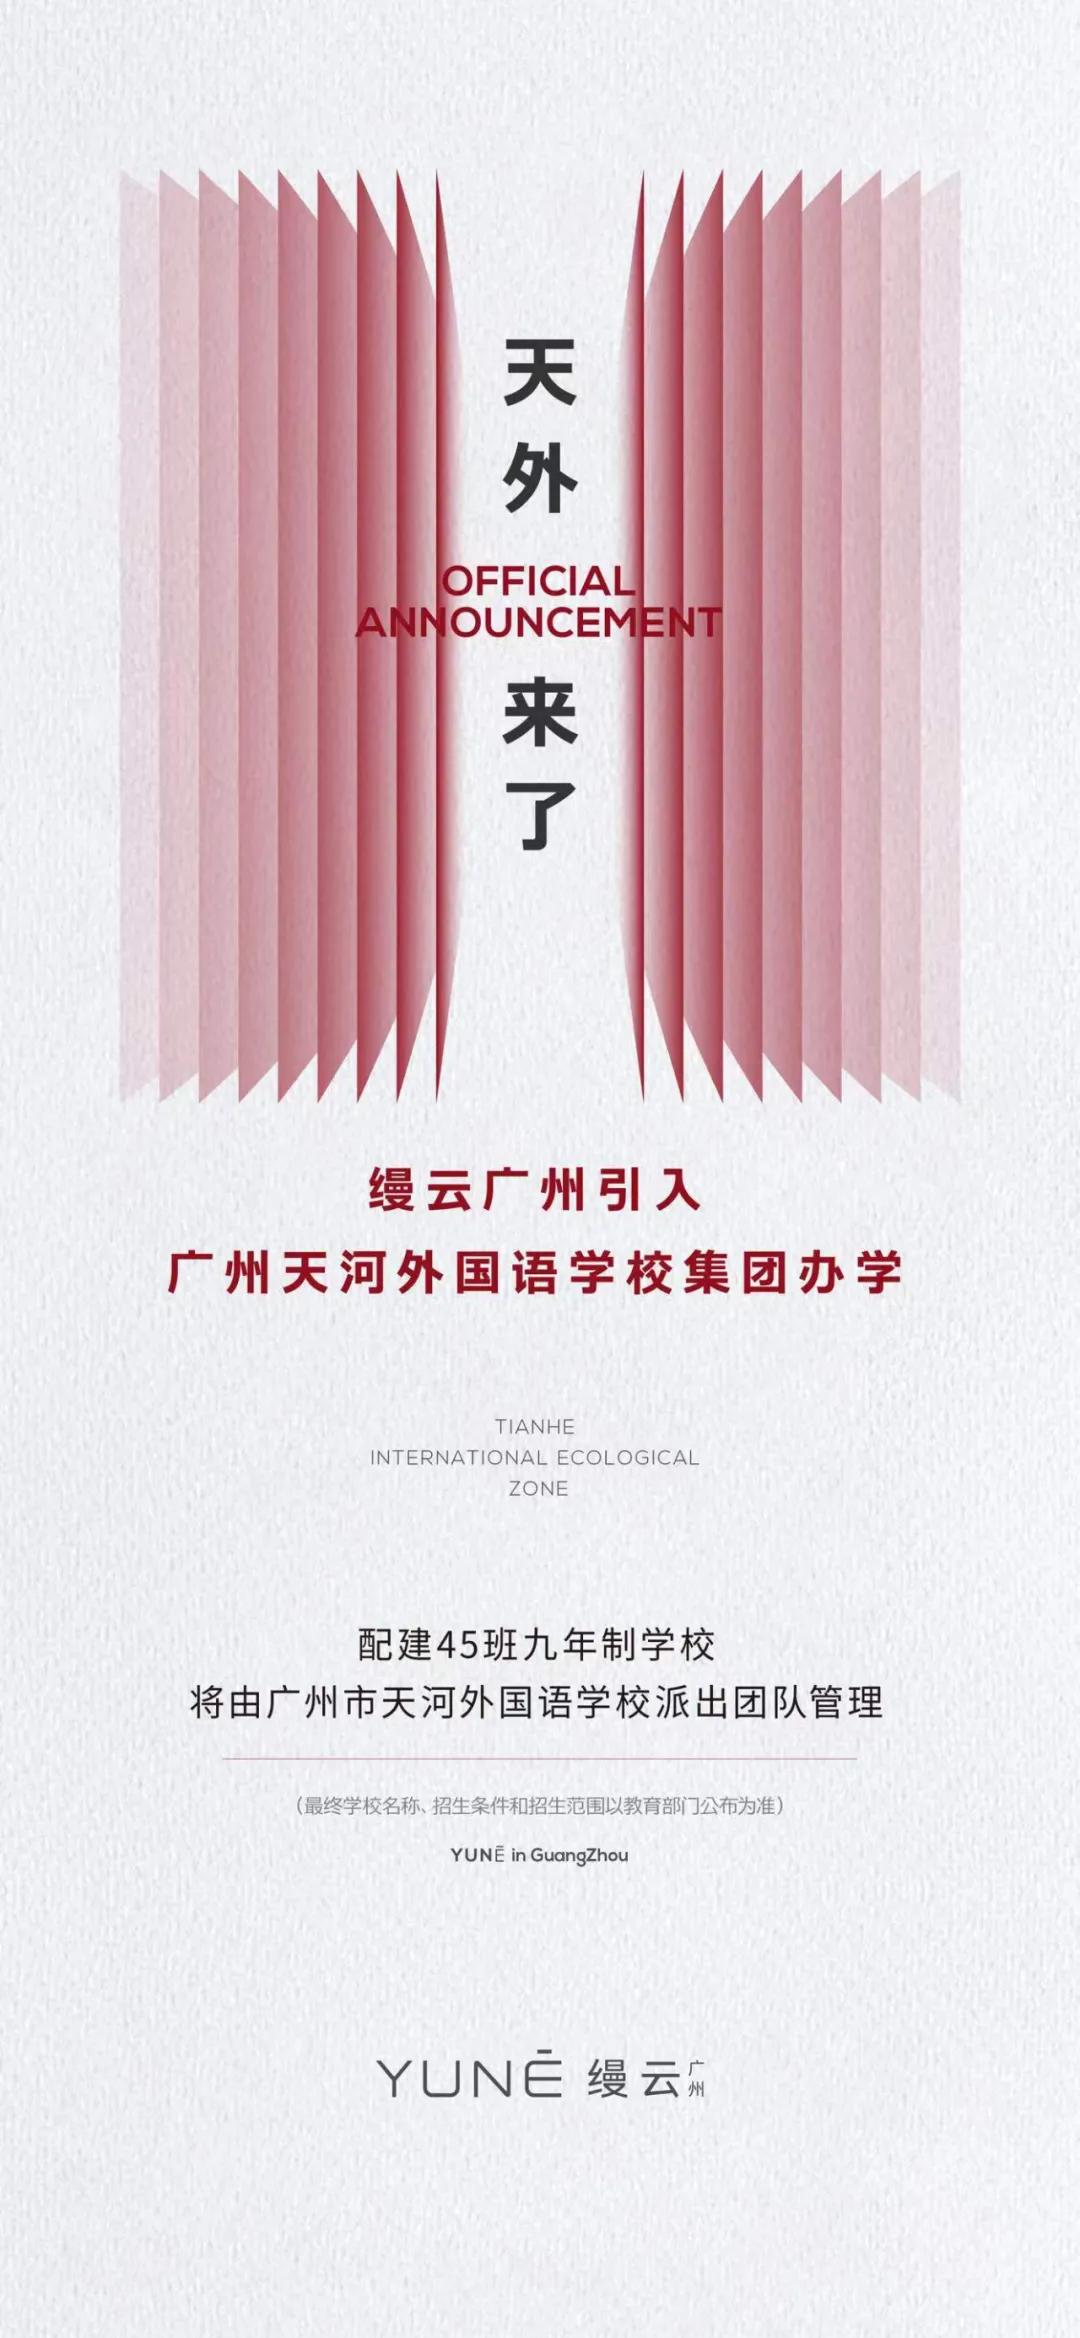 图/缦云广州官宣引入广州天河外国语学校教育集团办学